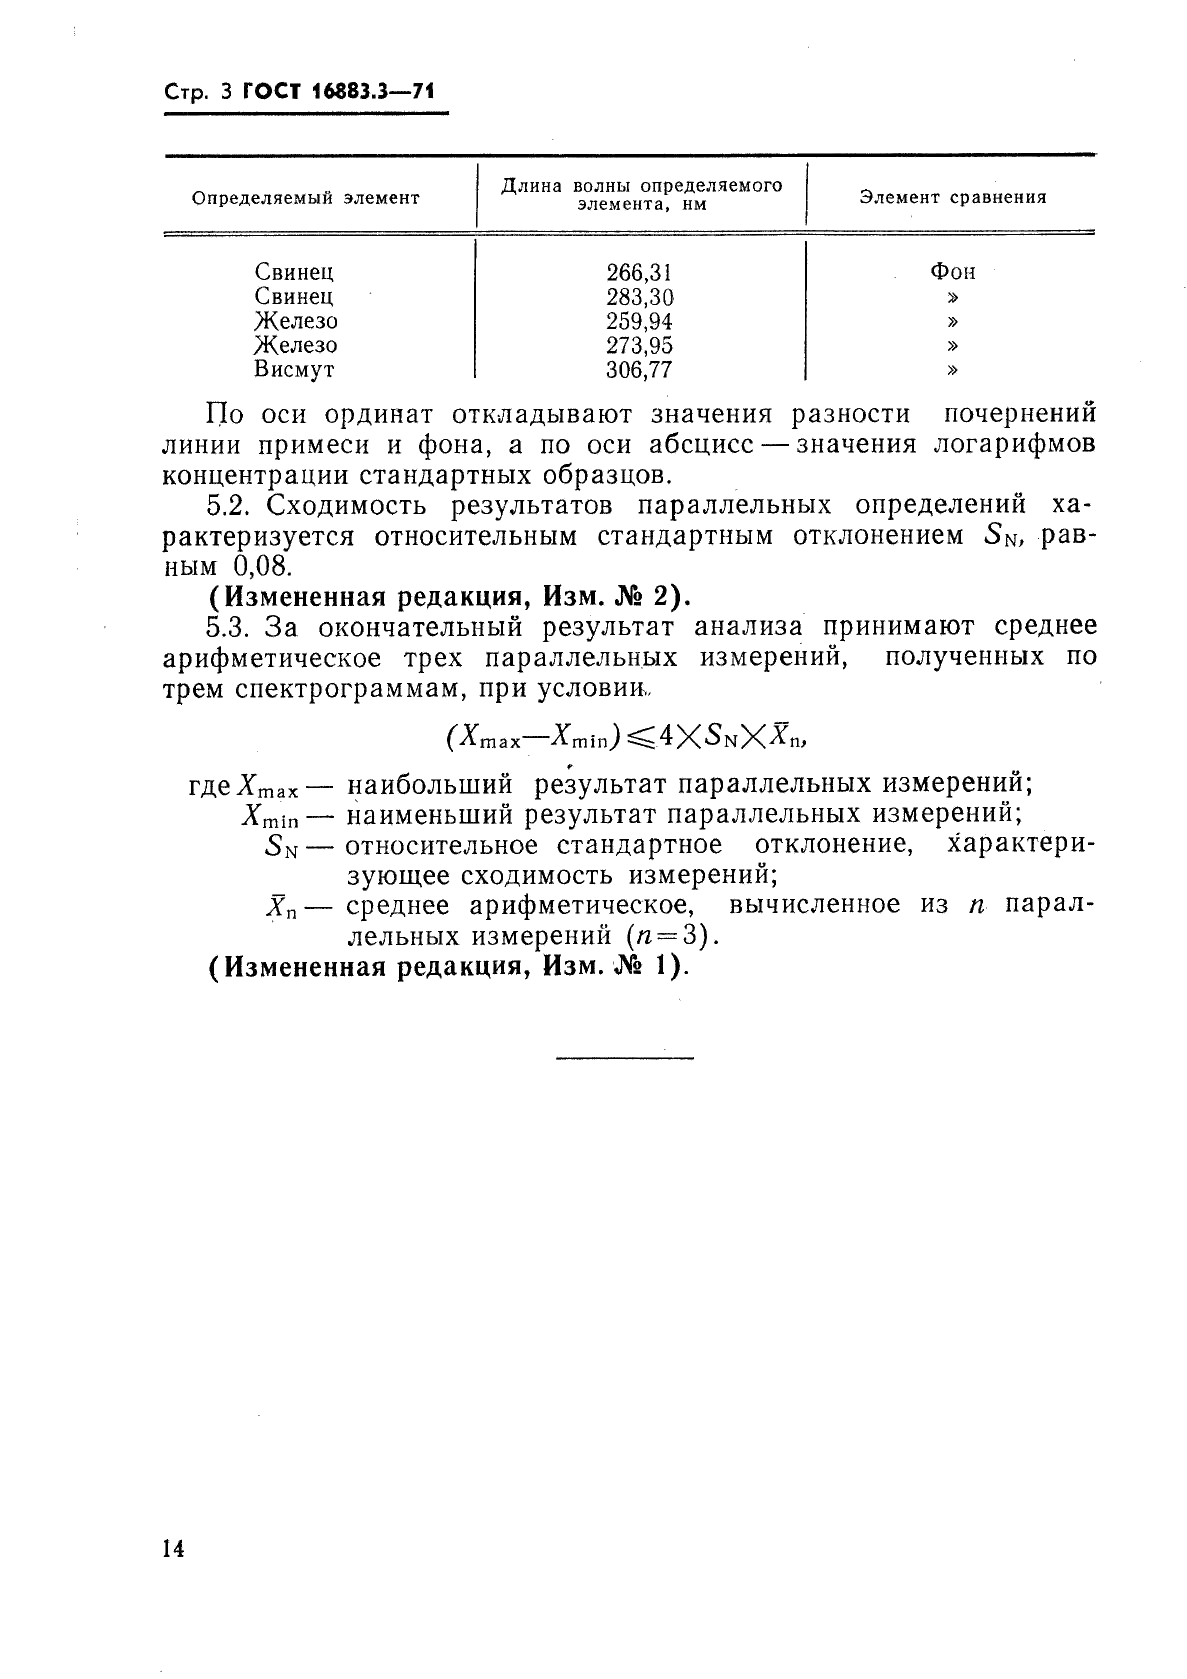 ГОСТ 16883.3-71 Серебряно-медно-цинковые припои. Спектральный метод определения свинца, железа и висмута (фото 3 из 3)